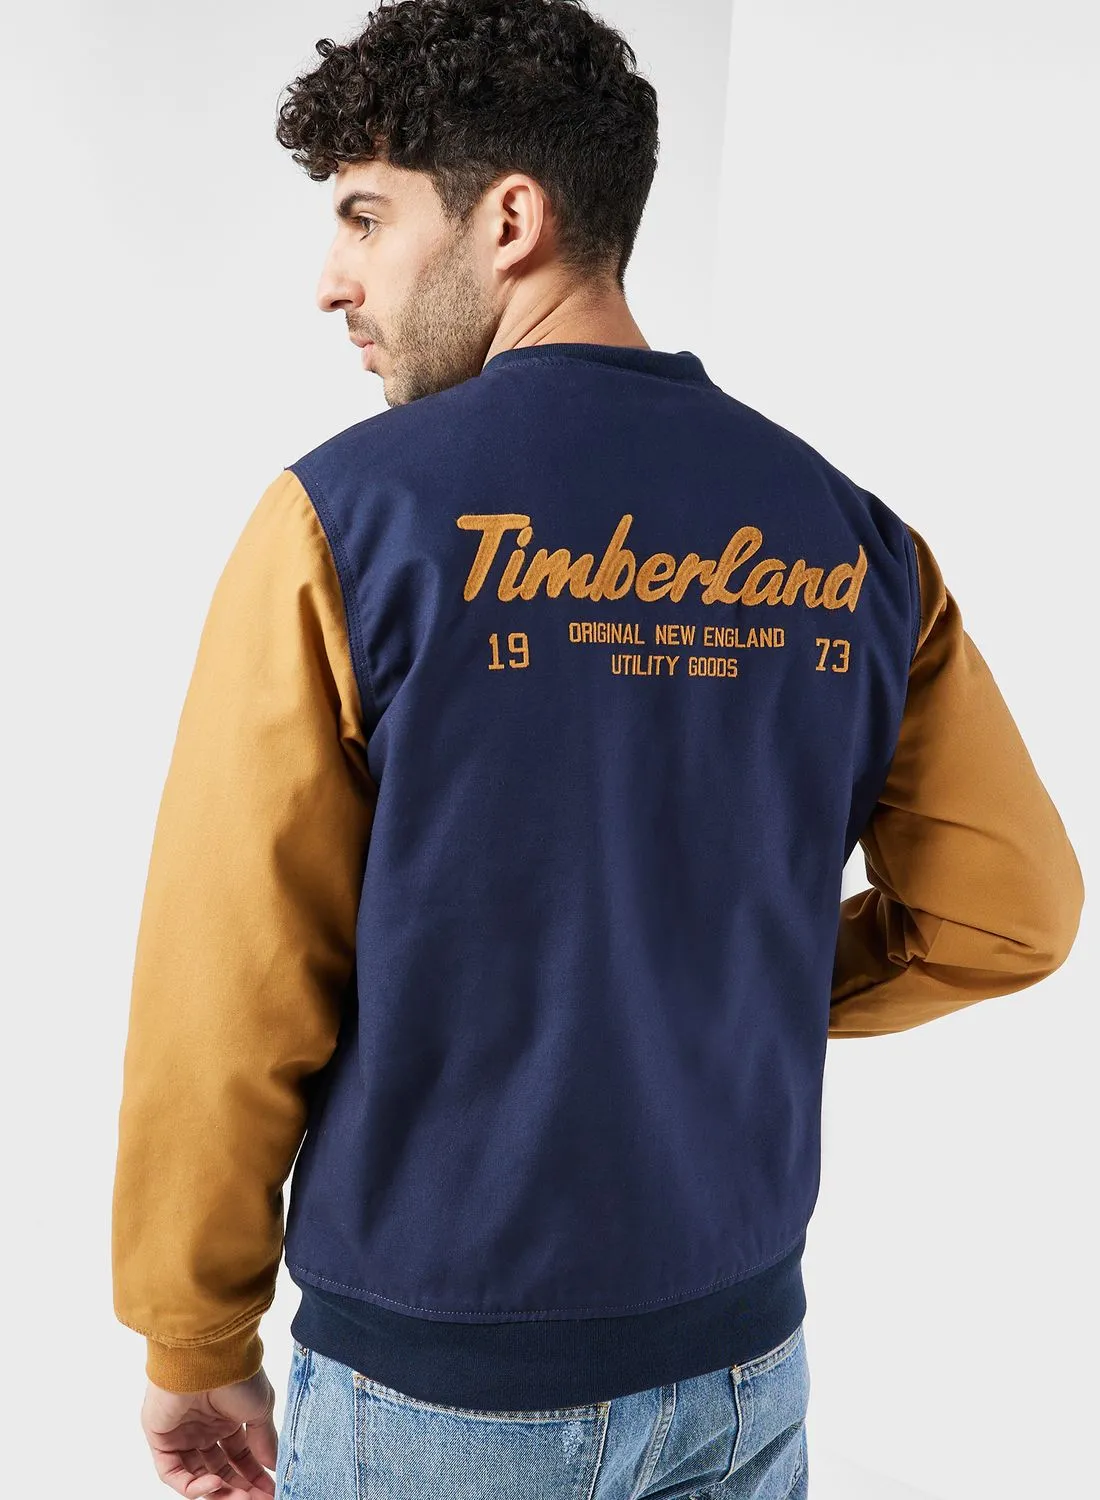 Timberland Utility Bomber Jacket